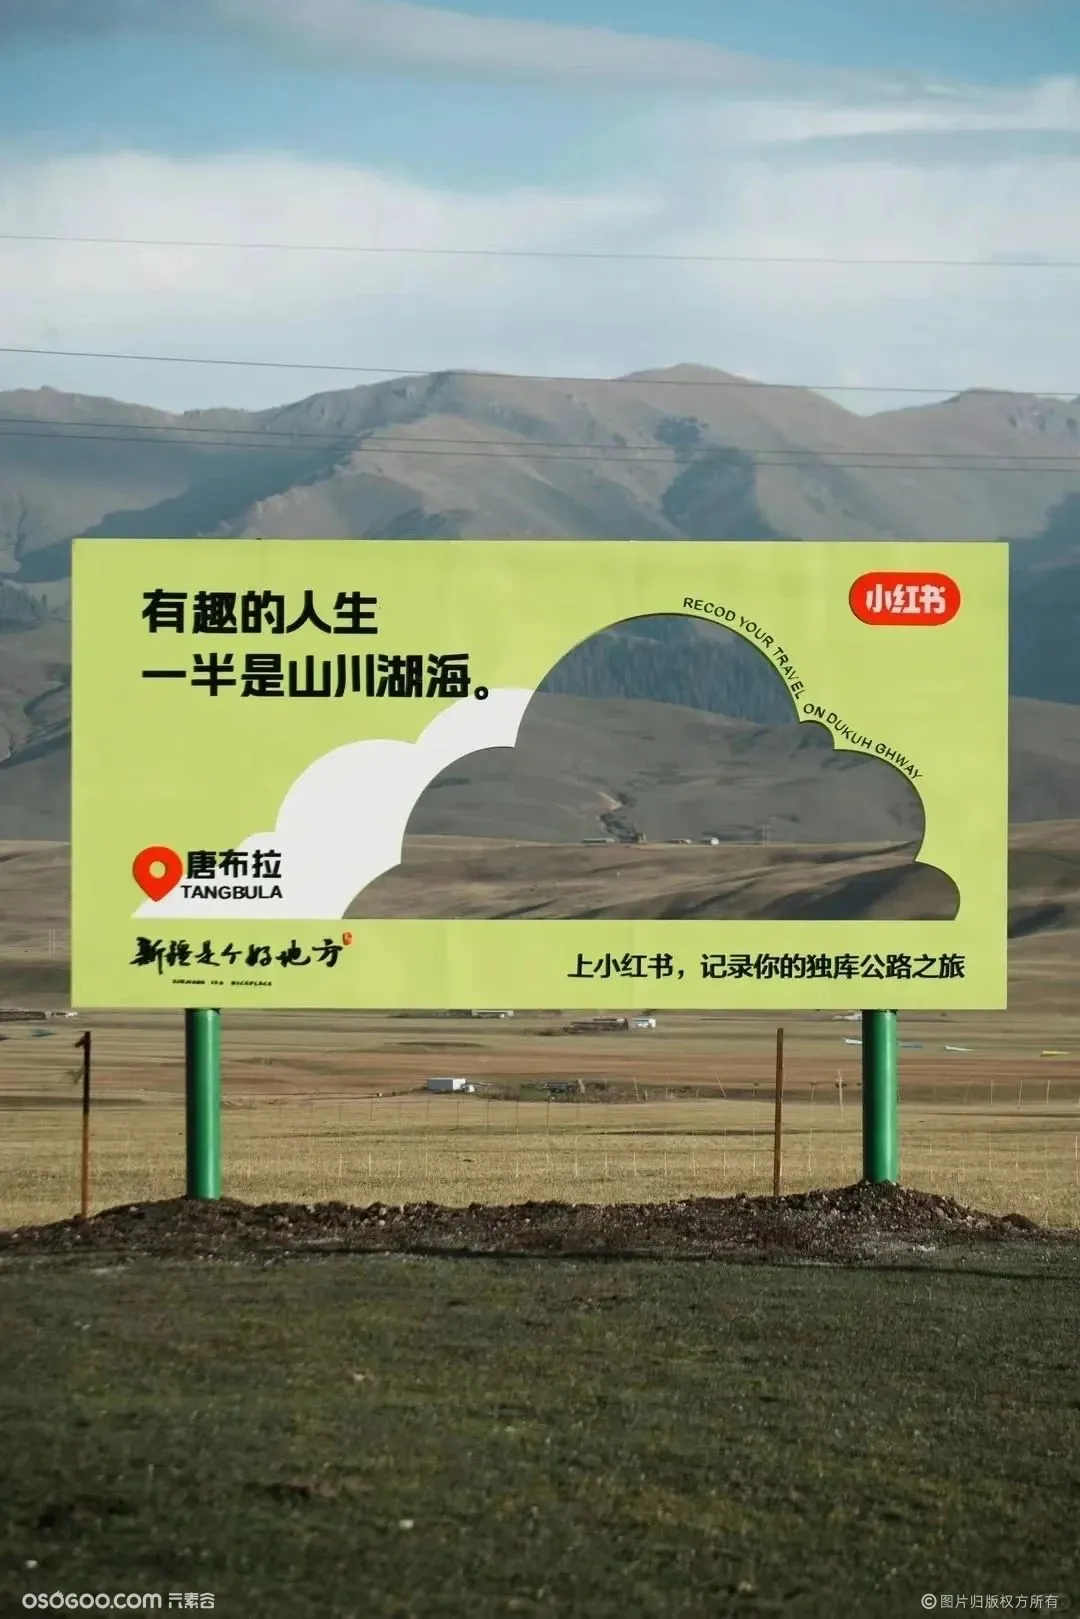 小红书在新疆独库公路上线了一组创意户外广告